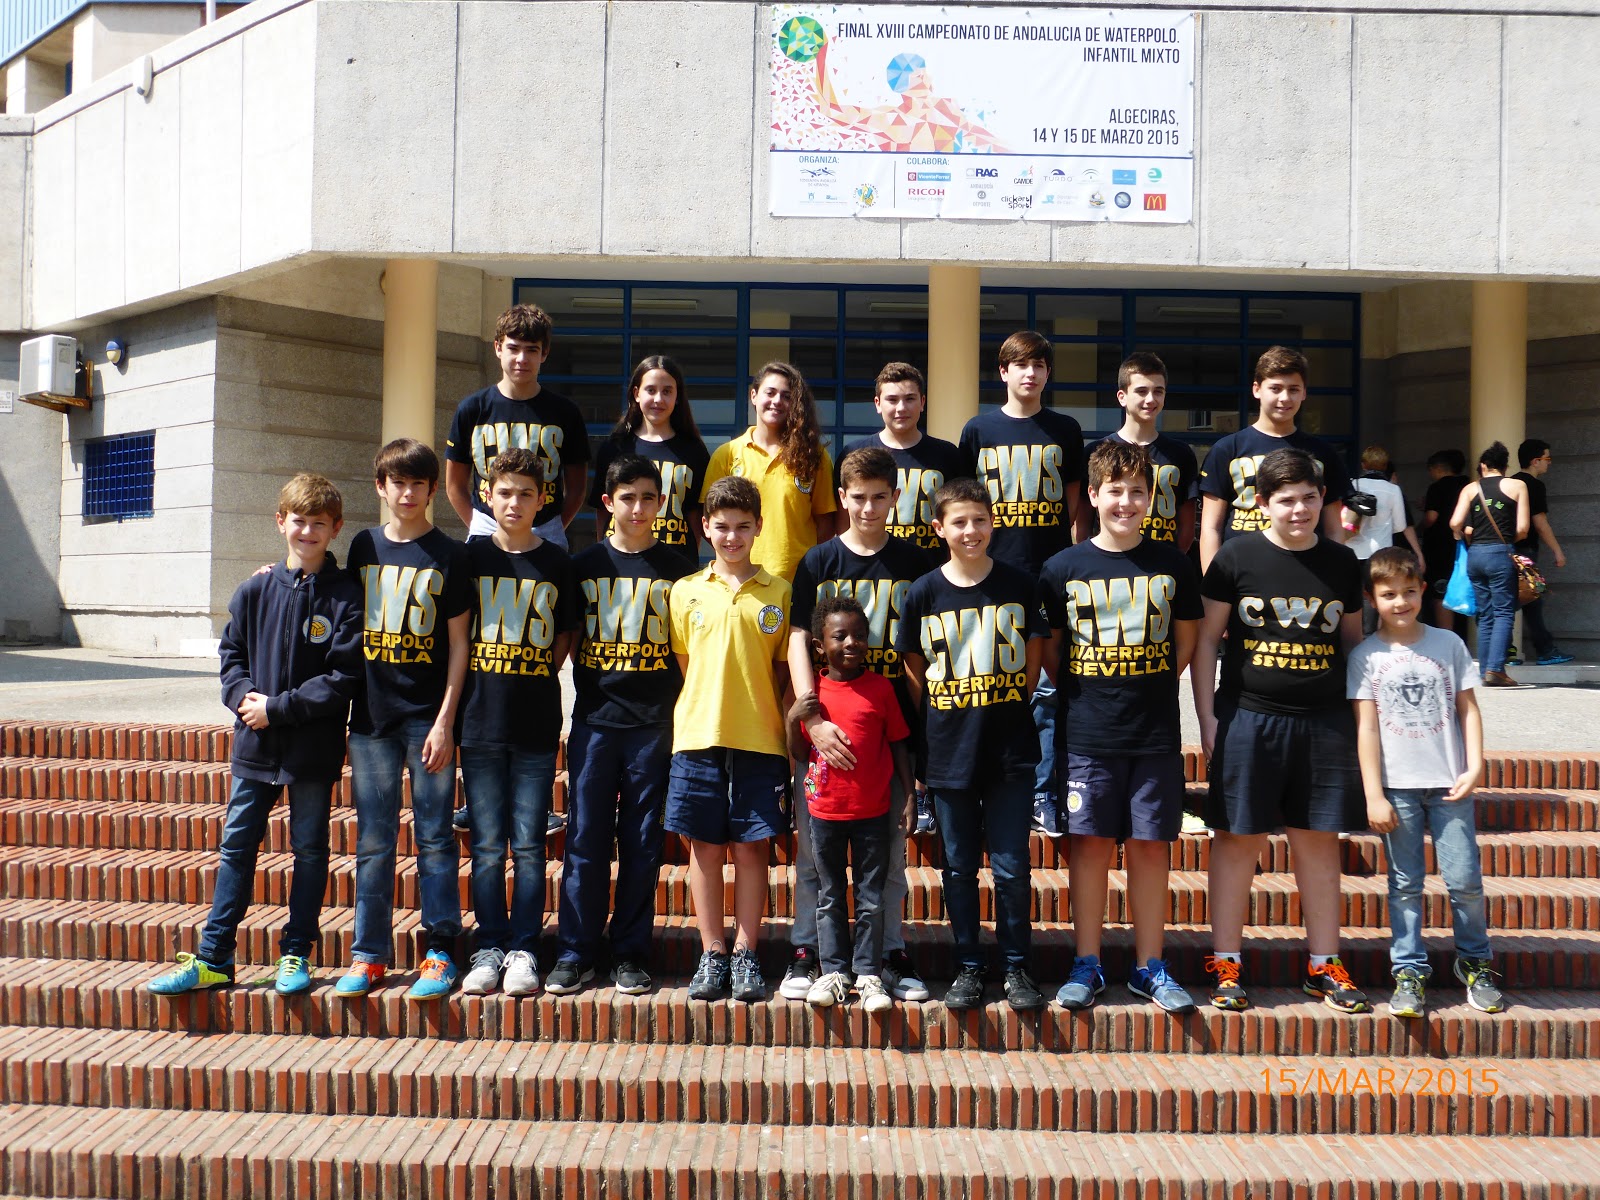 Campeonato Andalucia 2015 Algeciras